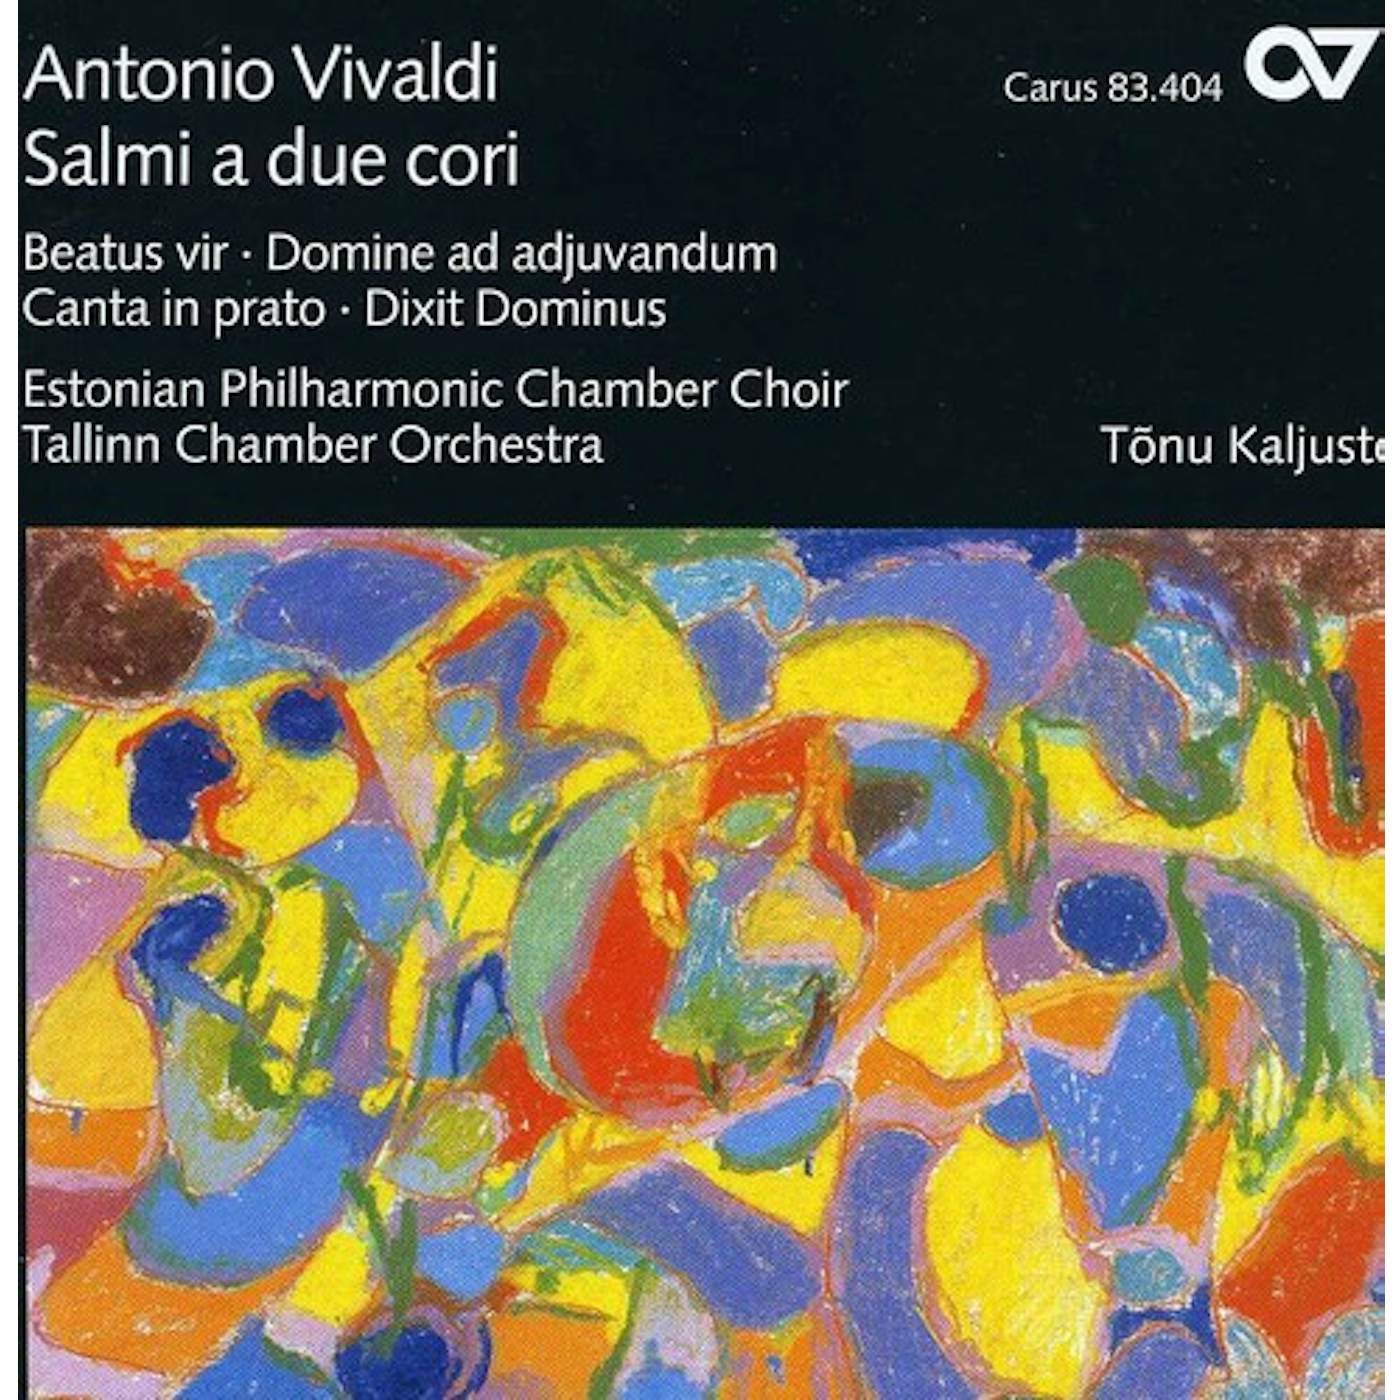 Antonio Vivaldi SALMI A DUE CORI CD